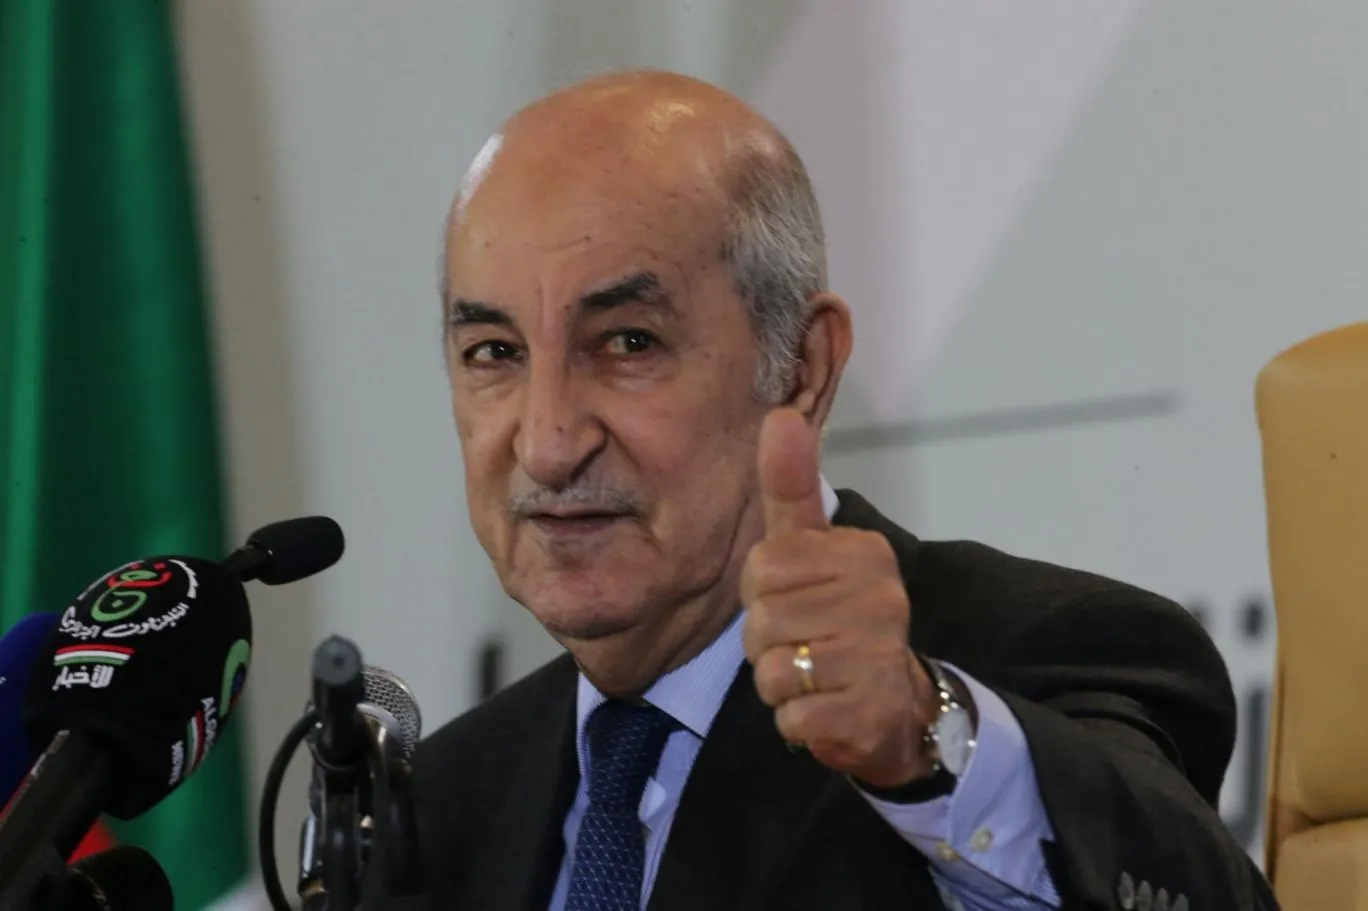 رئيس الجزائر يؤكد مساعي بلاده لإعادة نظام الأسد للجامعة العربية بدعوى "لم شمل العرب"